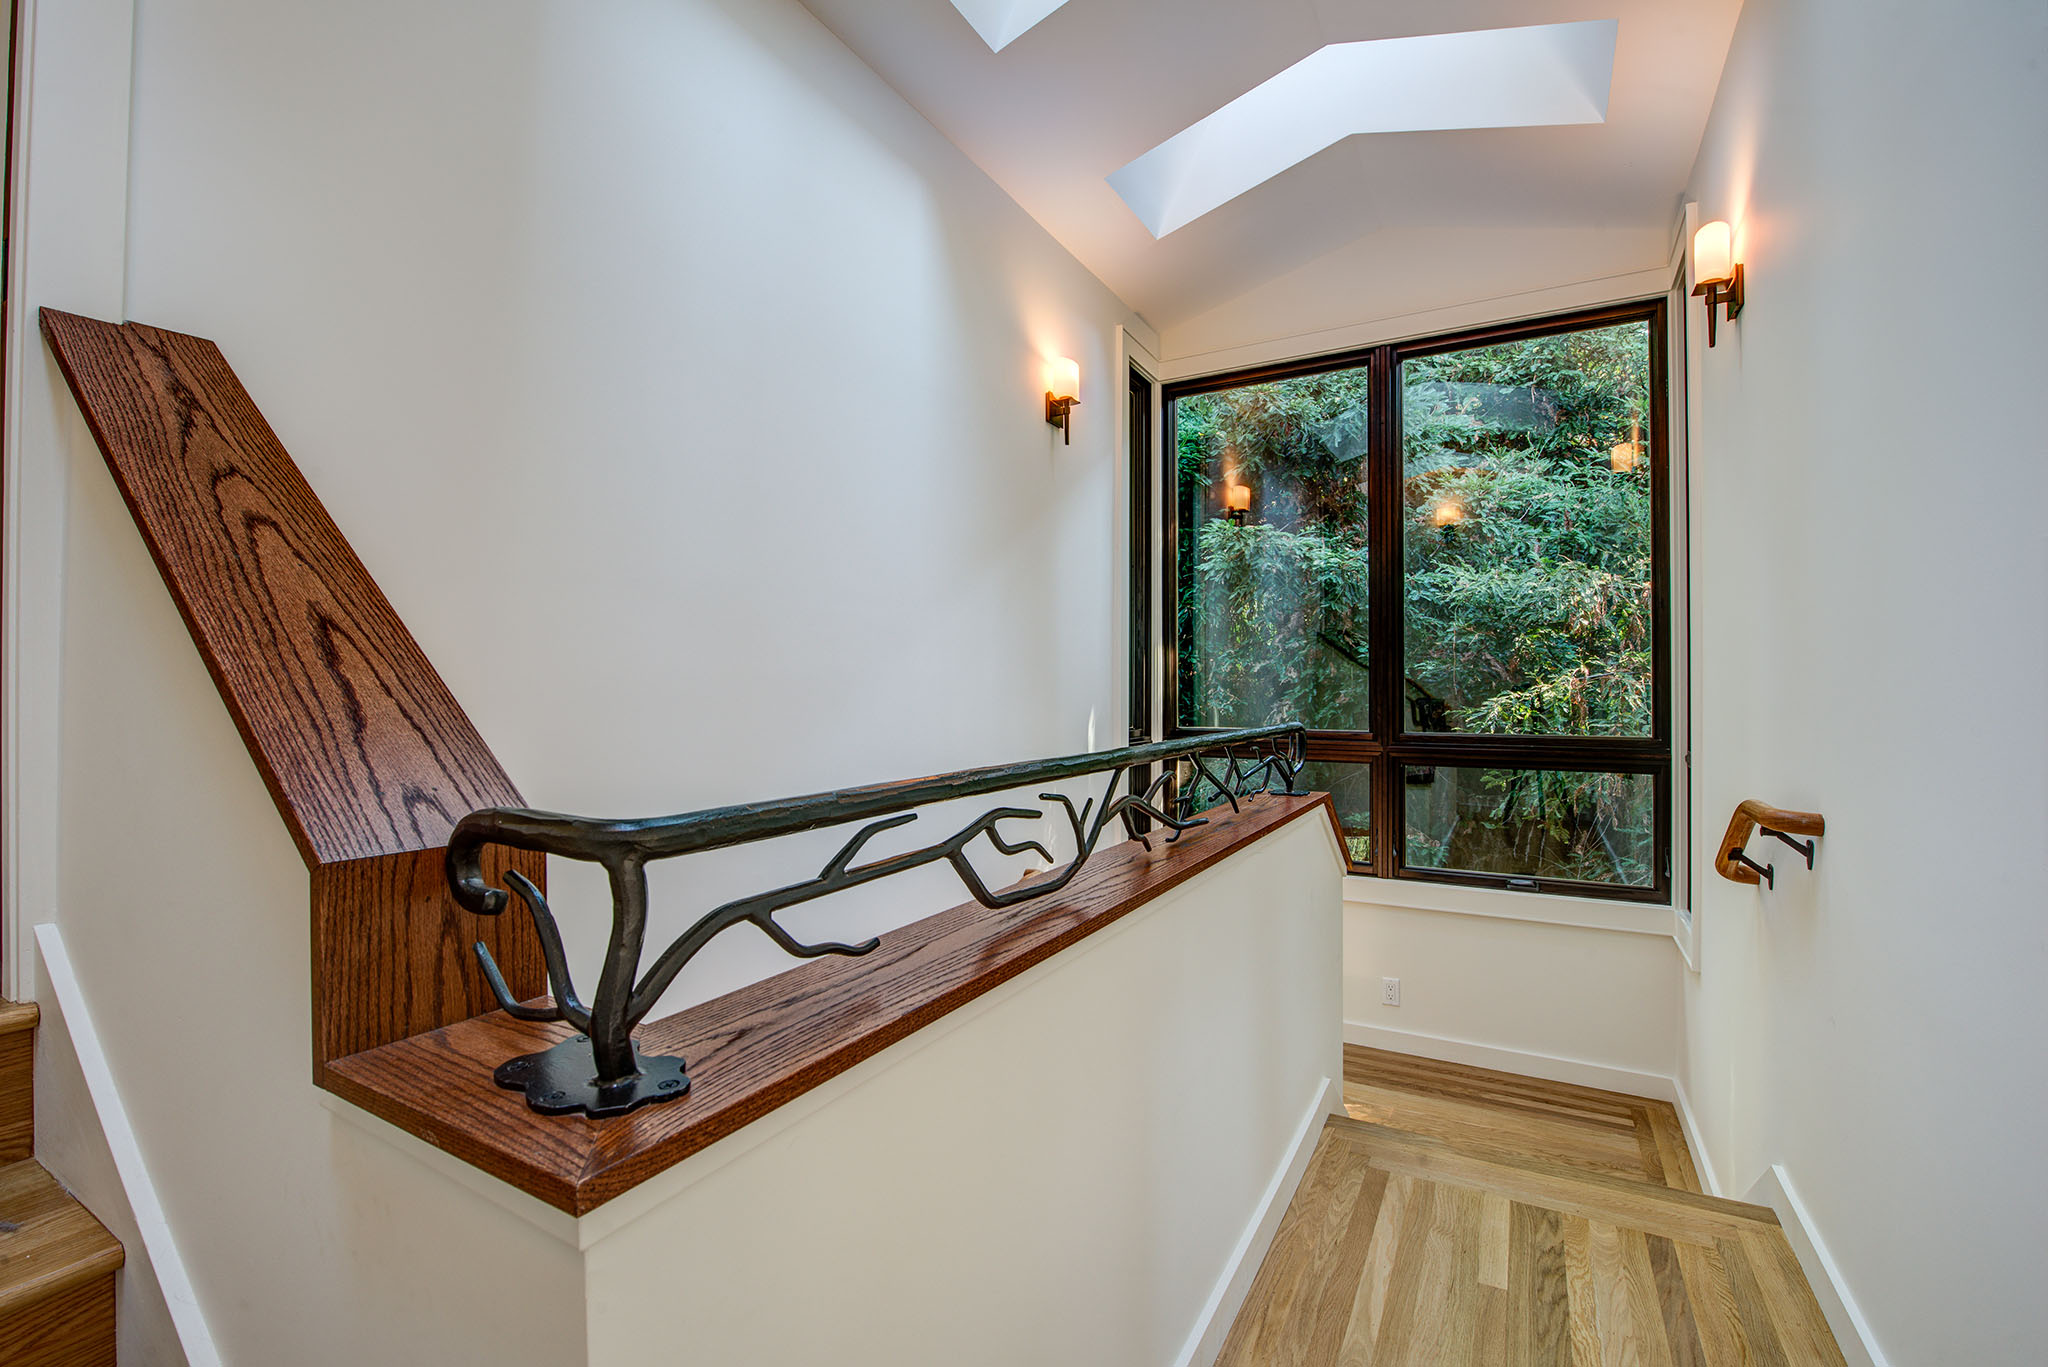 Berkeley-Hills-Craftsman-Renewal stair railing detail to windows